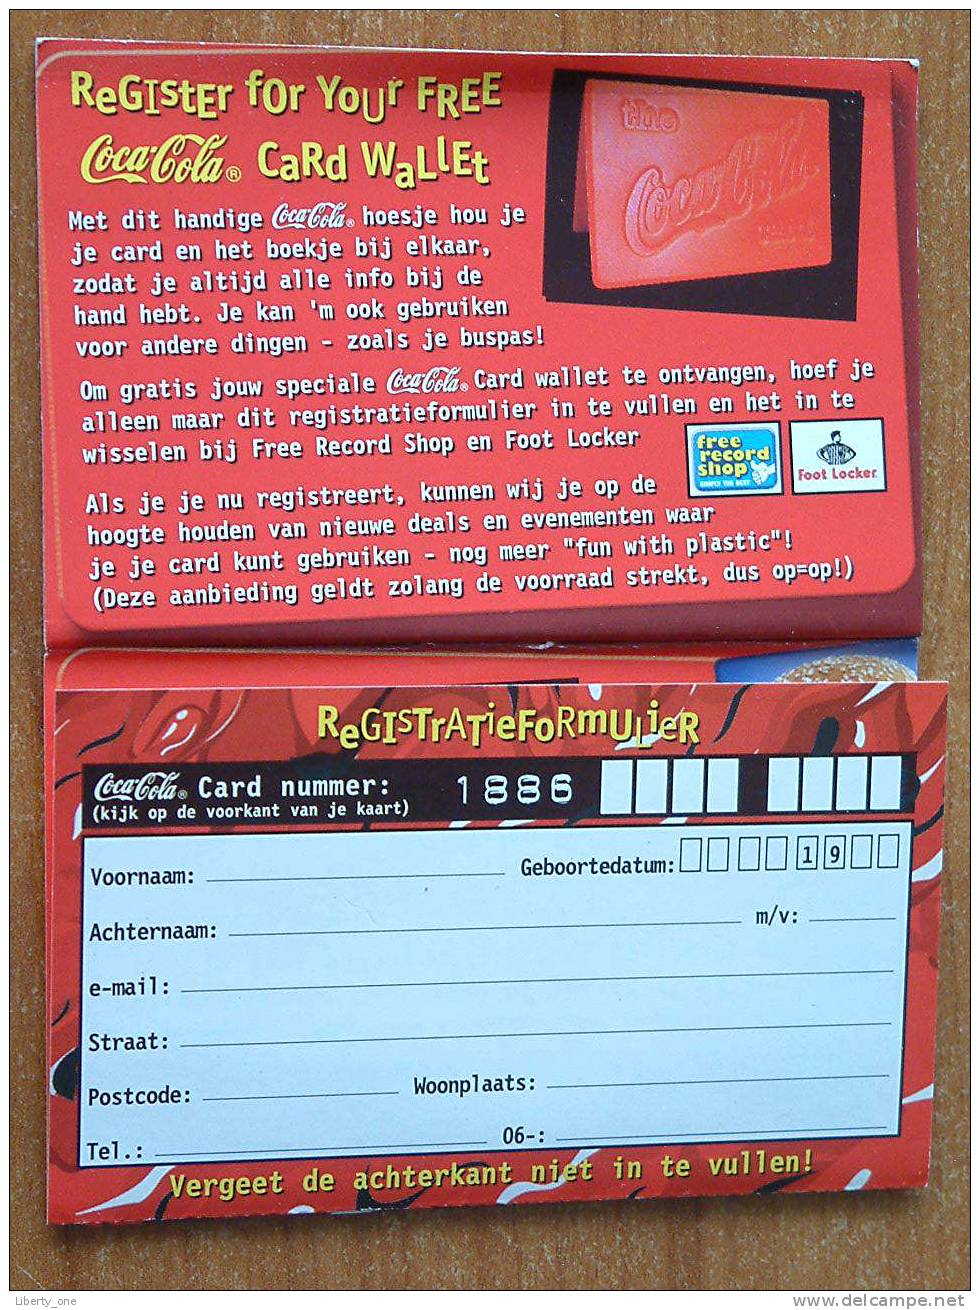 THE COCA-COLA CARD NR. 1886 1022 4404 ( Details See Photo - Out Of Date - Collectors Item ) - Dutch Item !! - Autres & Non Classés